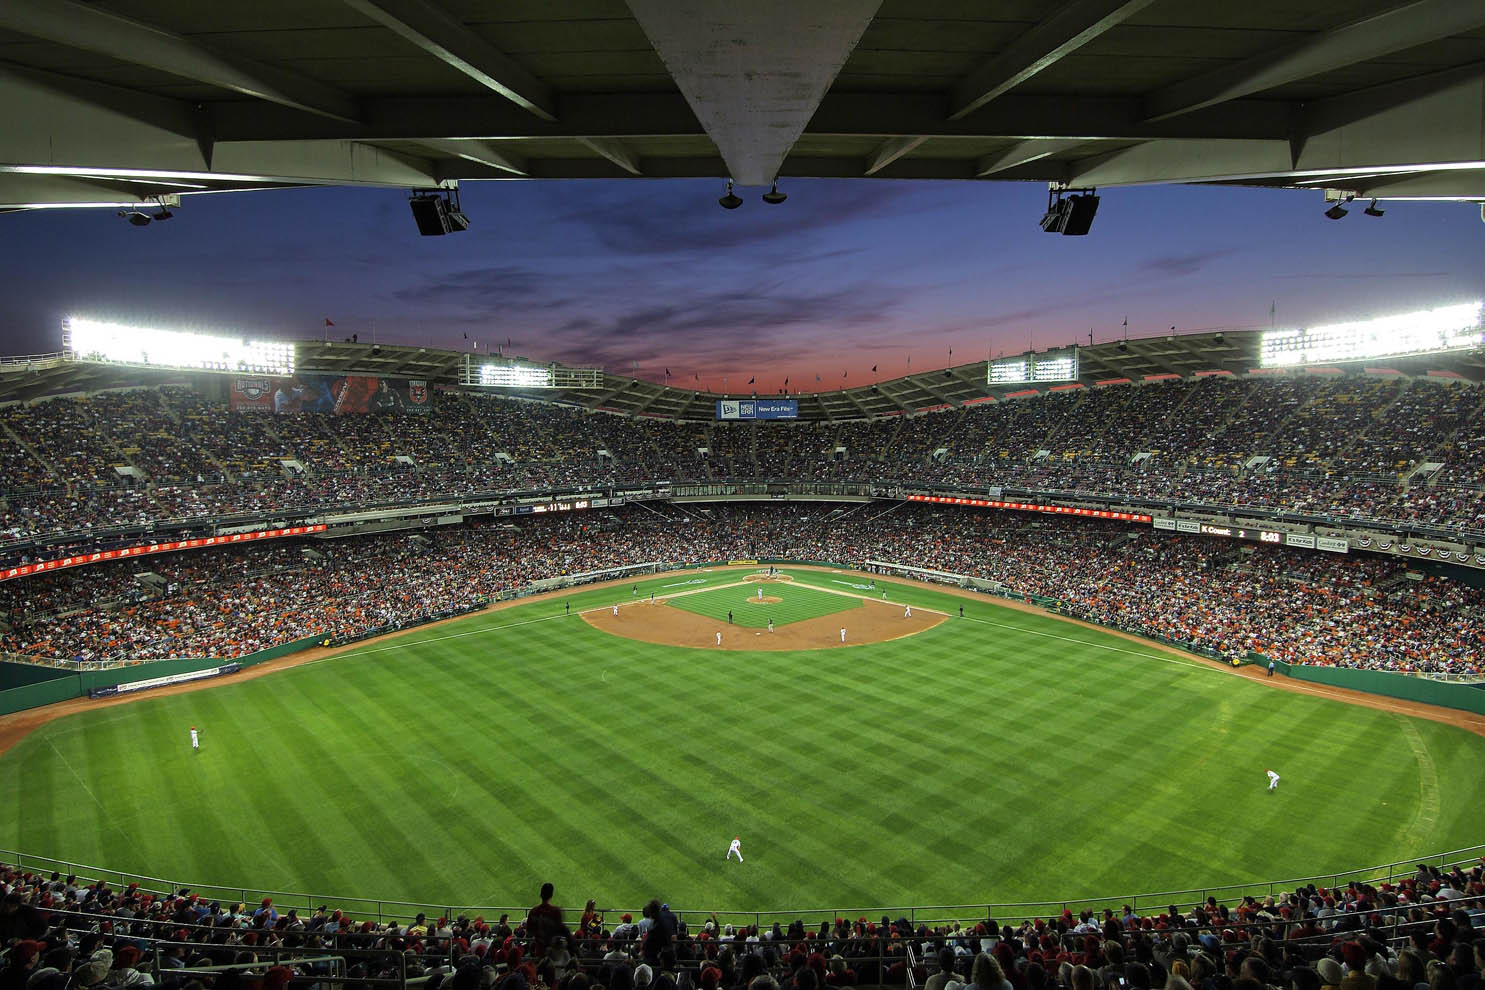 twilight view of full stadium